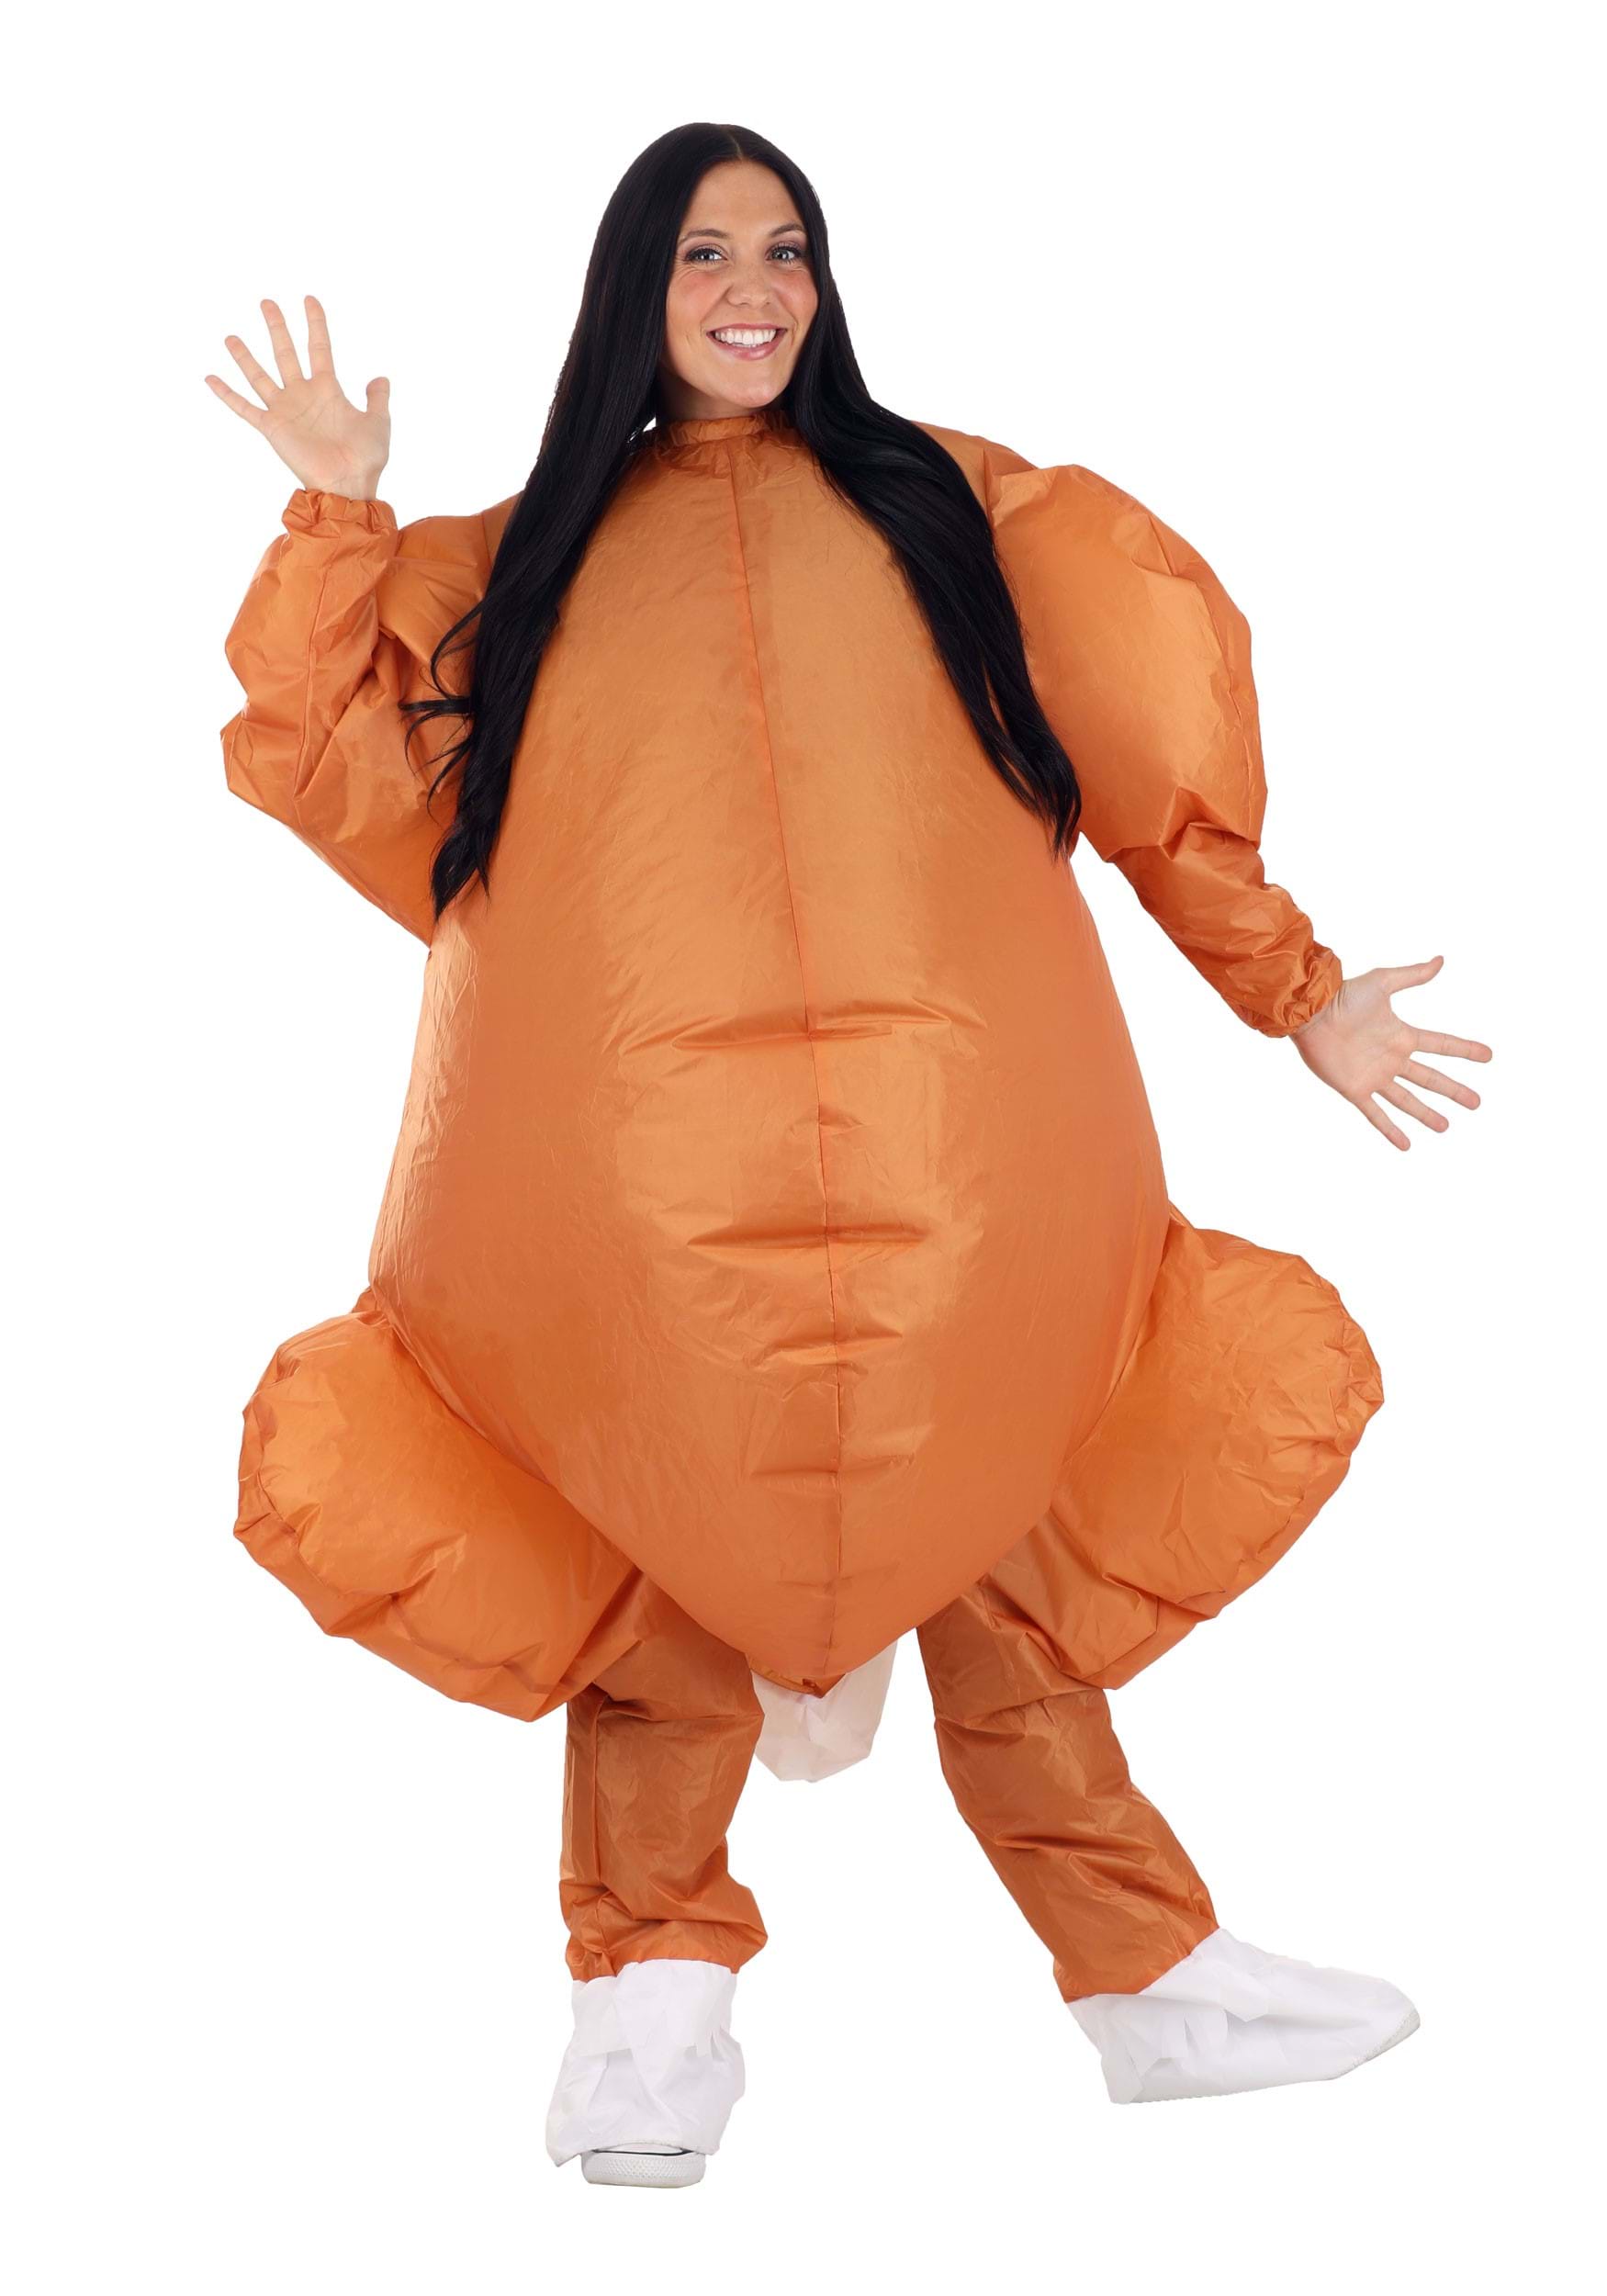 https://images.halloweencostumes.com/products/87633/1-1/adult-inflatable-roast-turkey-costume.jpg